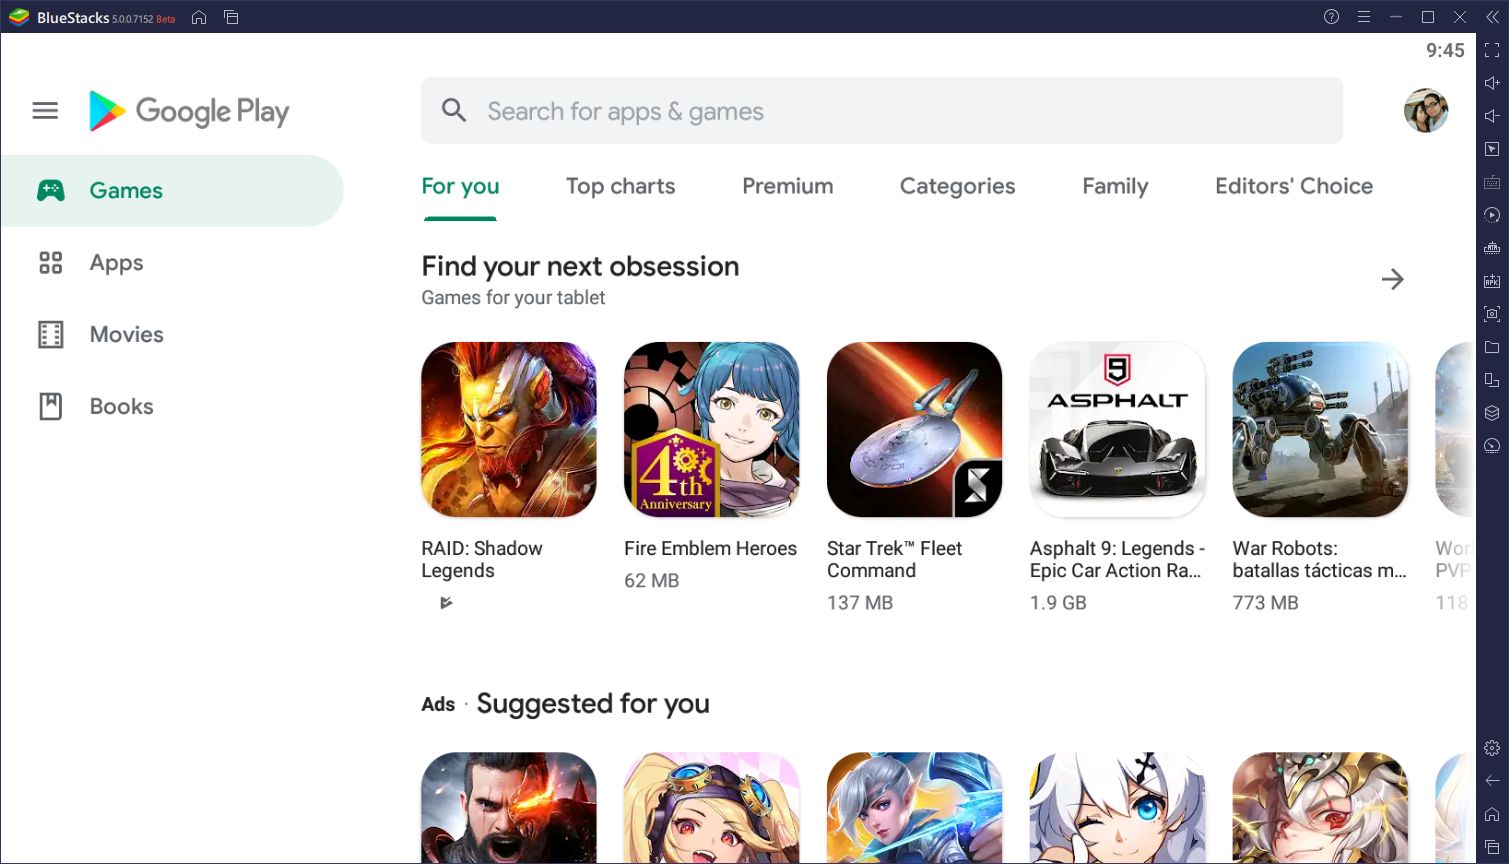 BlueStacks traz jogos Android para qualquer browser